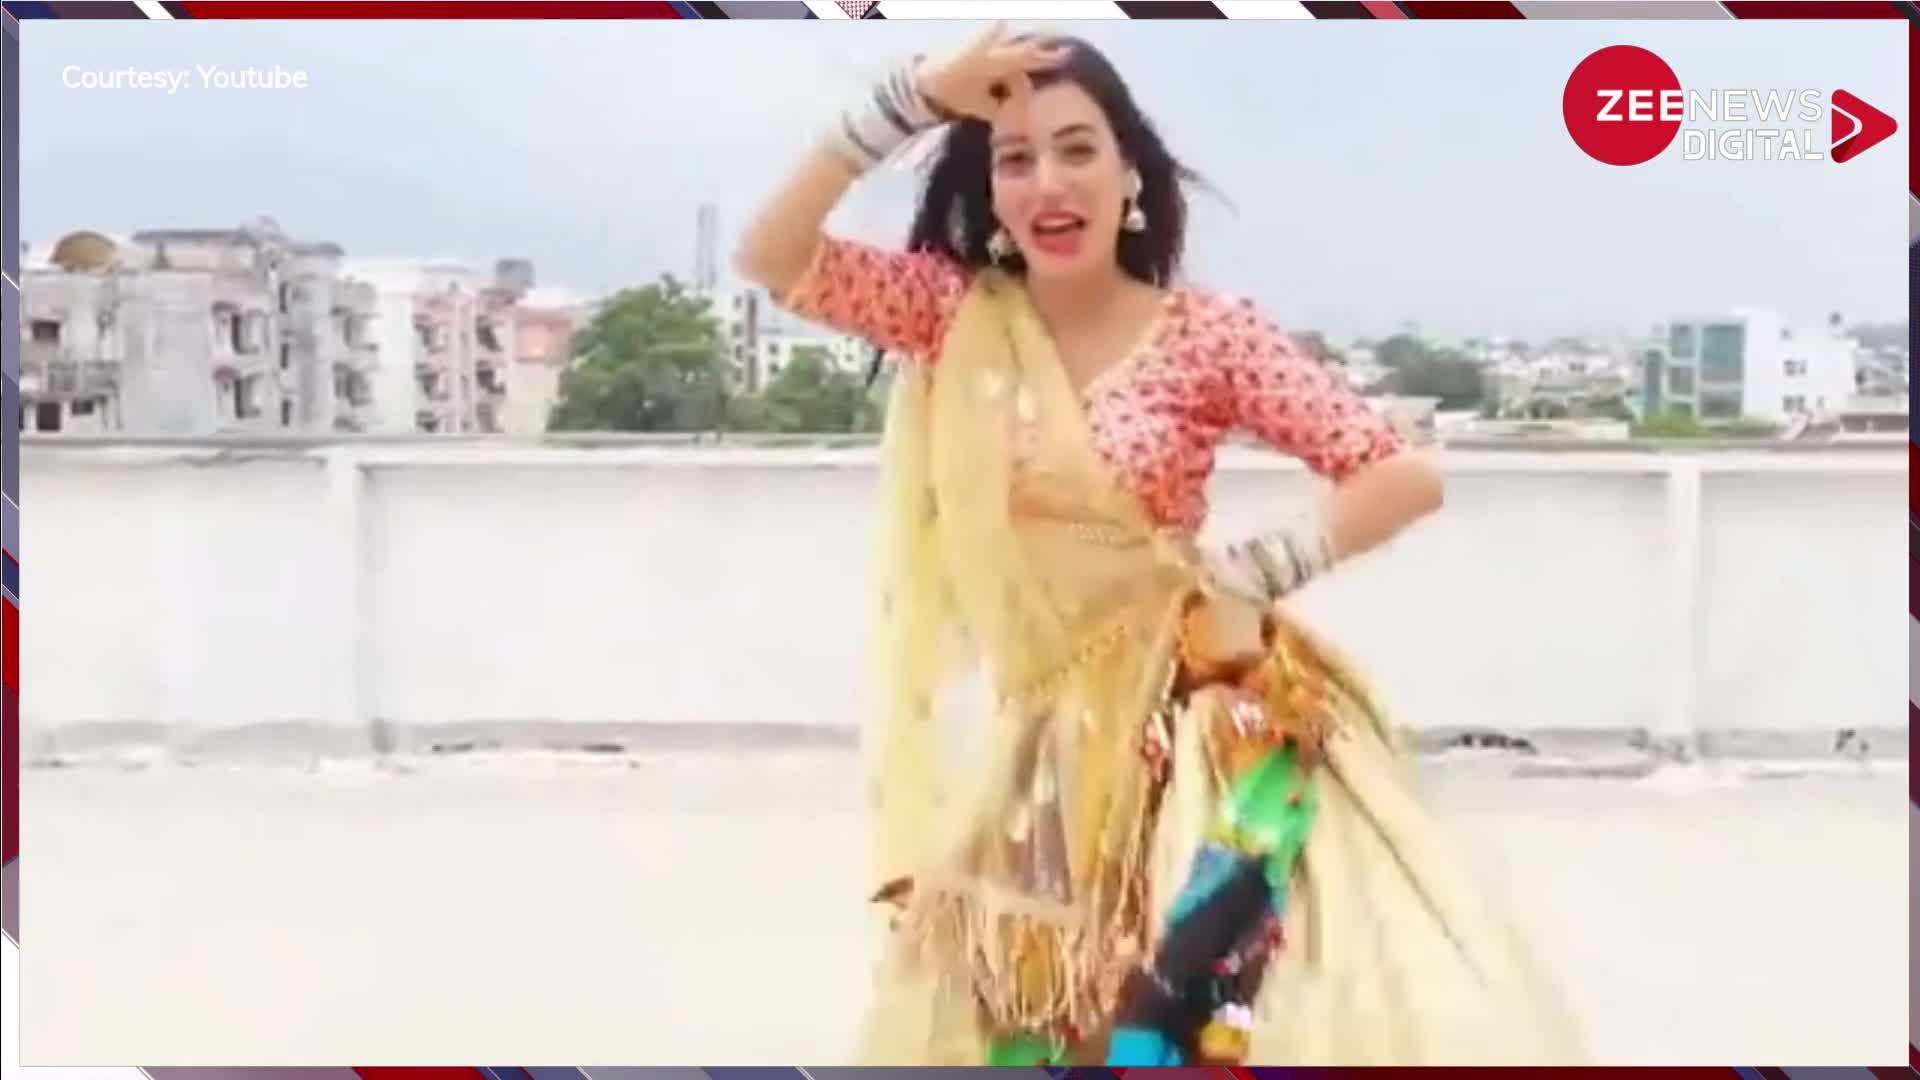 Deshi Bhabhi Hot Dance: लहंगा हाथ में पकड़कर देसी भाभी ने छत पर लगाए बेहद हॉट ठूमके, देख मचल उठे लोग